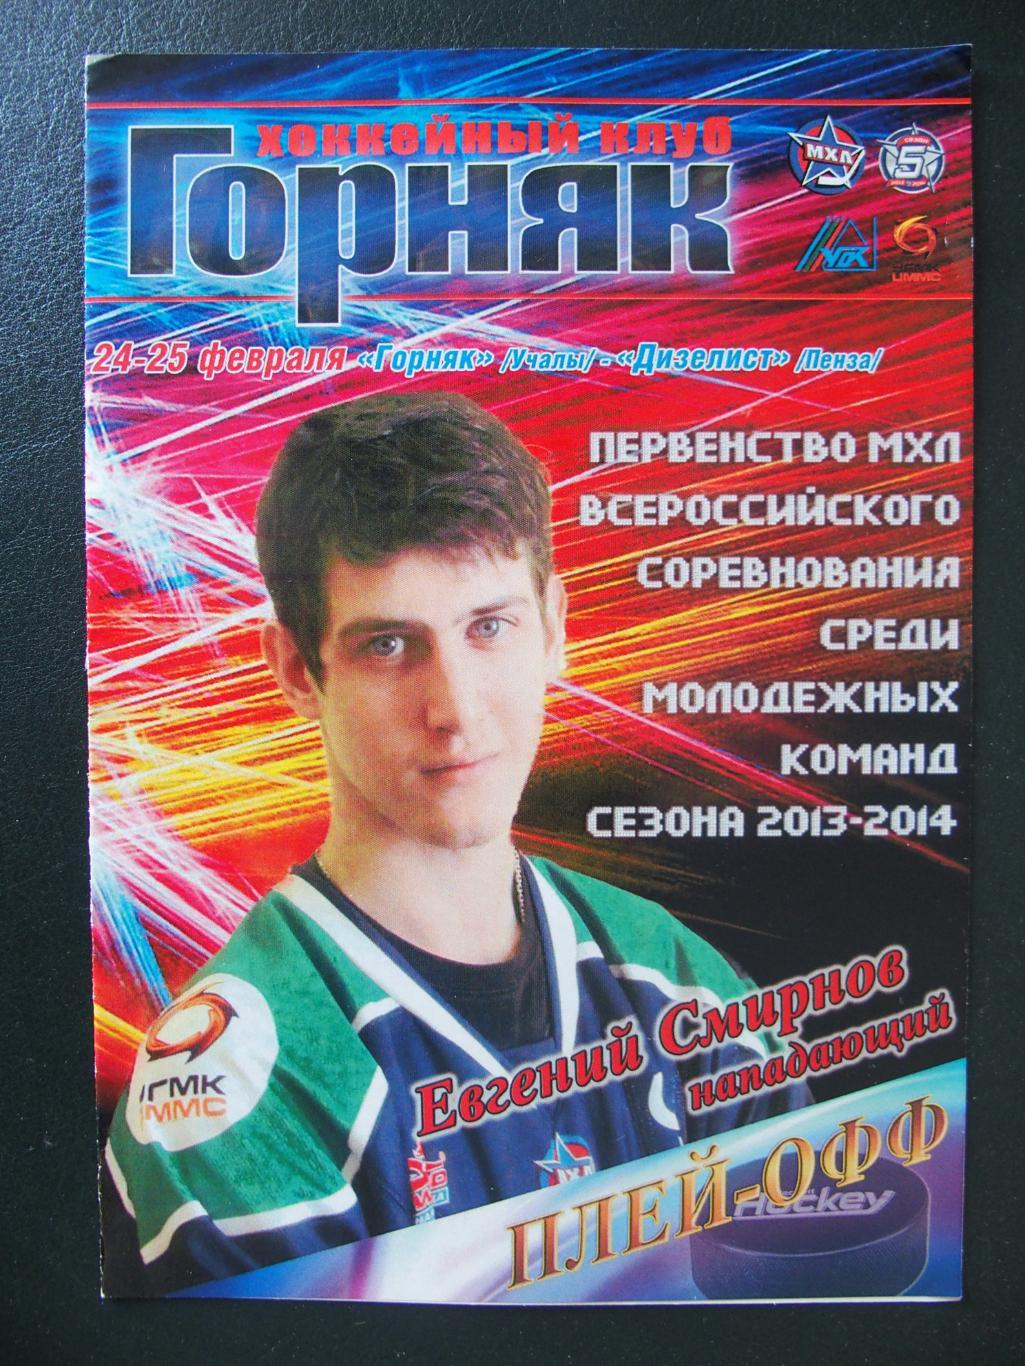 Горняк Учалы - Дизелист Пенза. 24-25 февраля 2014 г. Плей-офф 2013-2014.